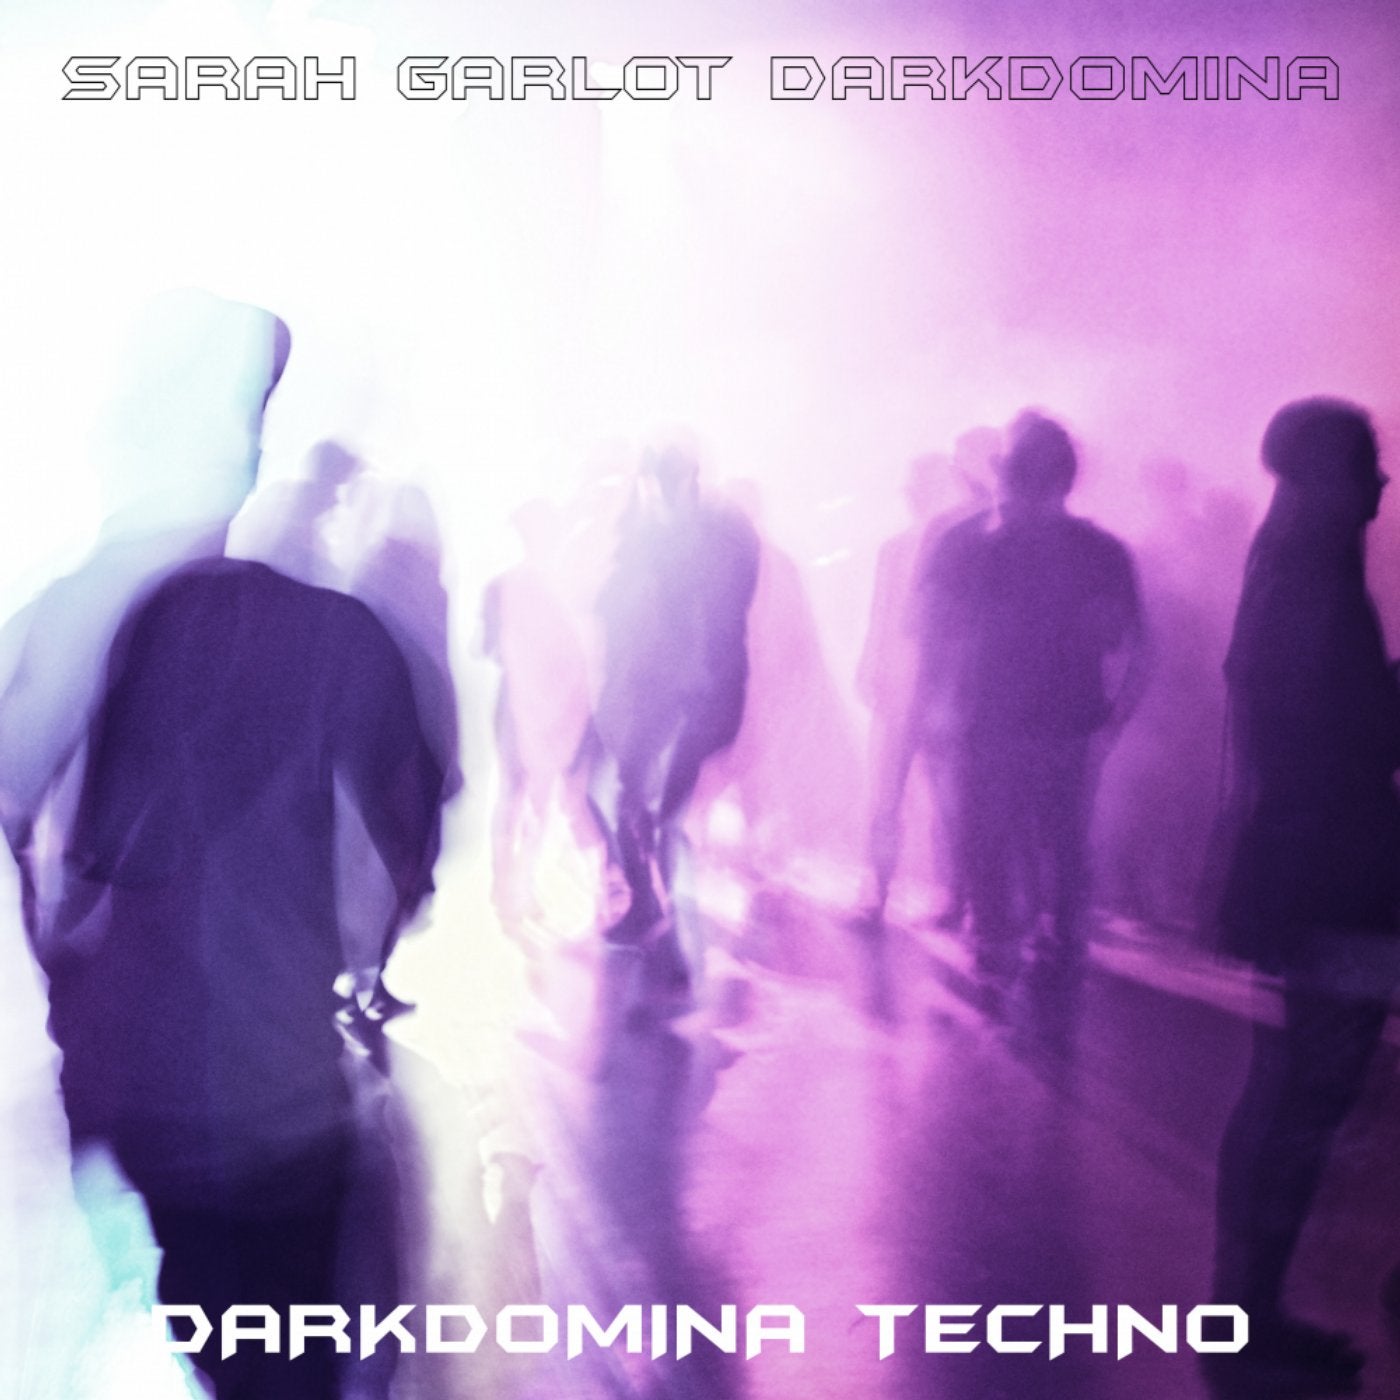 Darkdomina Techno